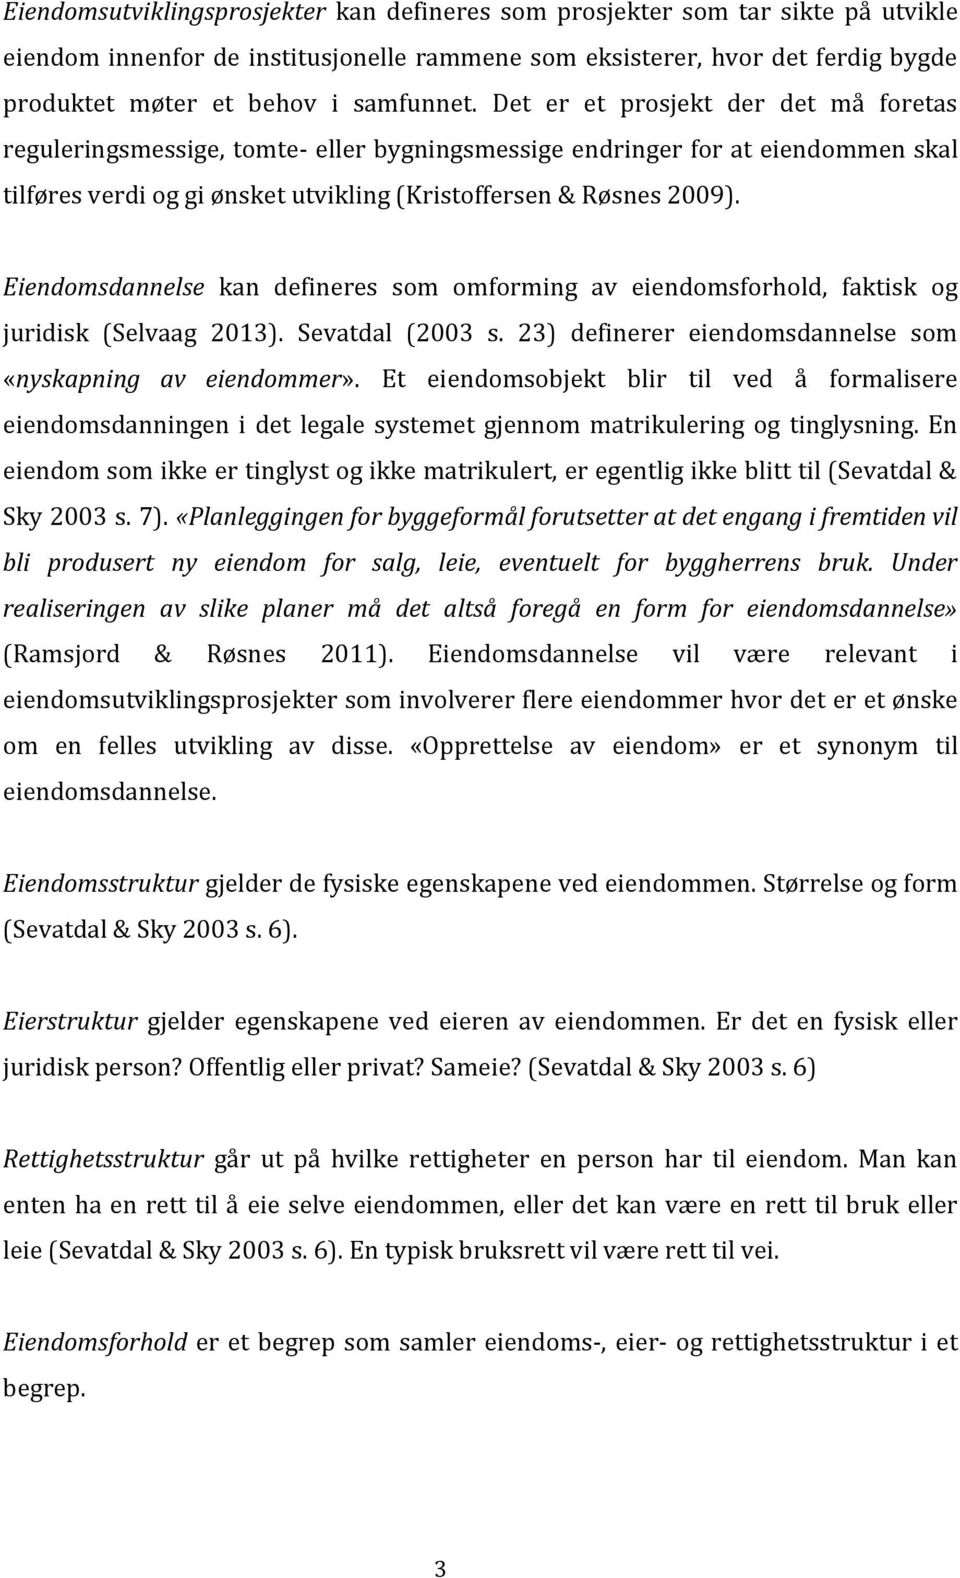 Eiendomsdannelse kan defineres som omforming av eiendomsforhold, faktisk og juridisk (Selvaag 2013). Sevatdal (2003 s. 23) definerer eiendomsdannelse som «nyskapning av eiendommer».